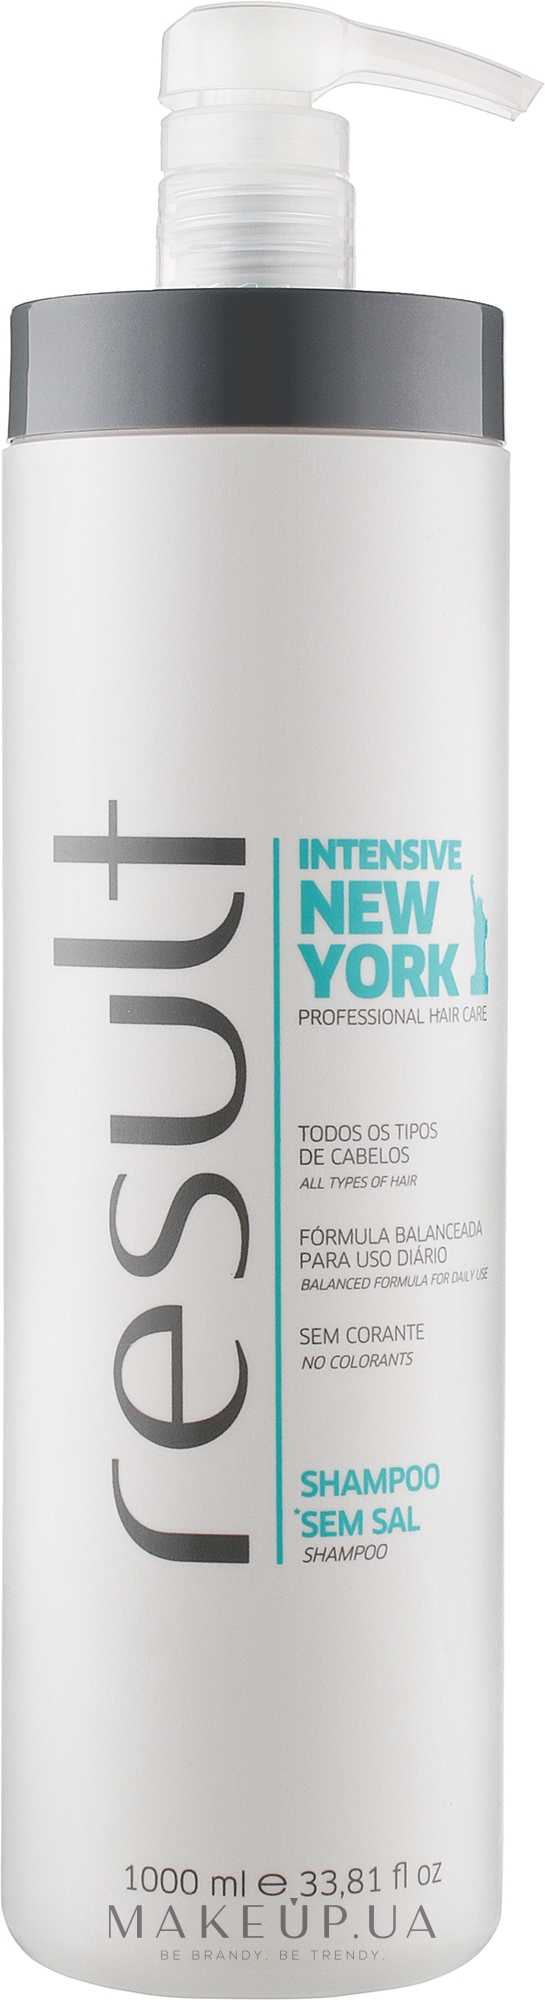 Шампунь для волос с кератином - Result Professional New York Intensive Shampoo — фото 1000ml